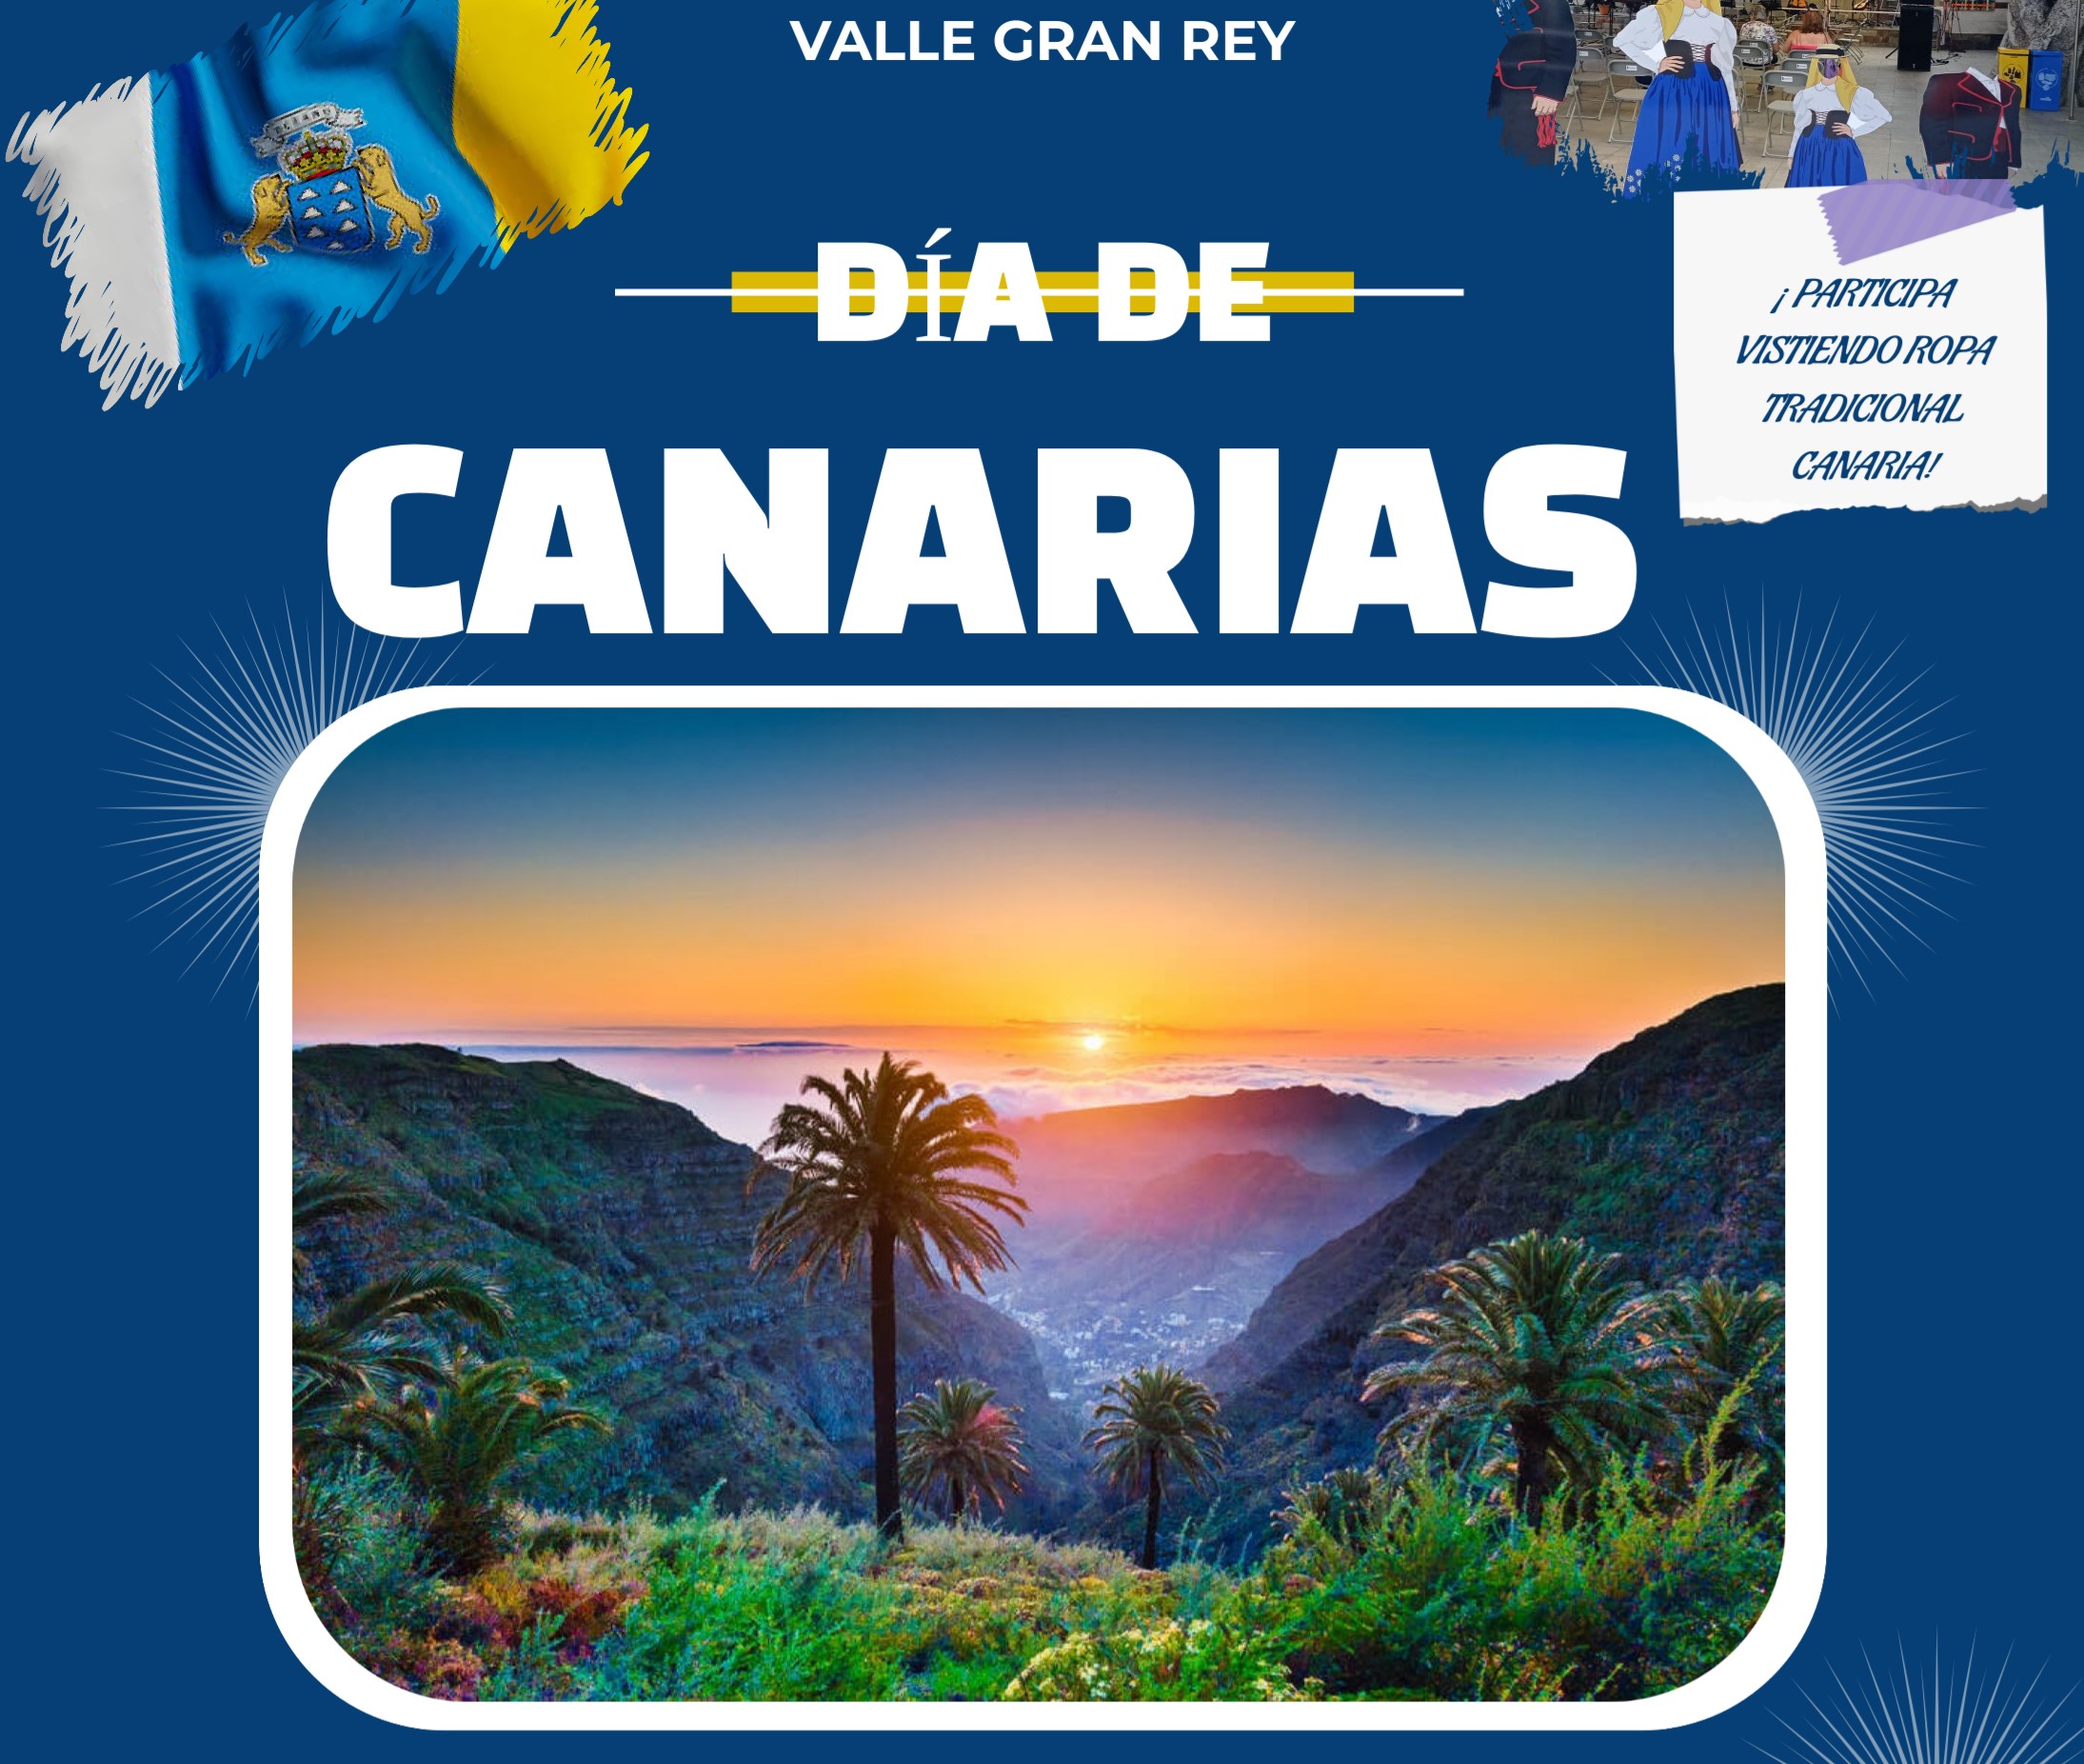 Programa de Valle Gran Rey para el Día de Canarias